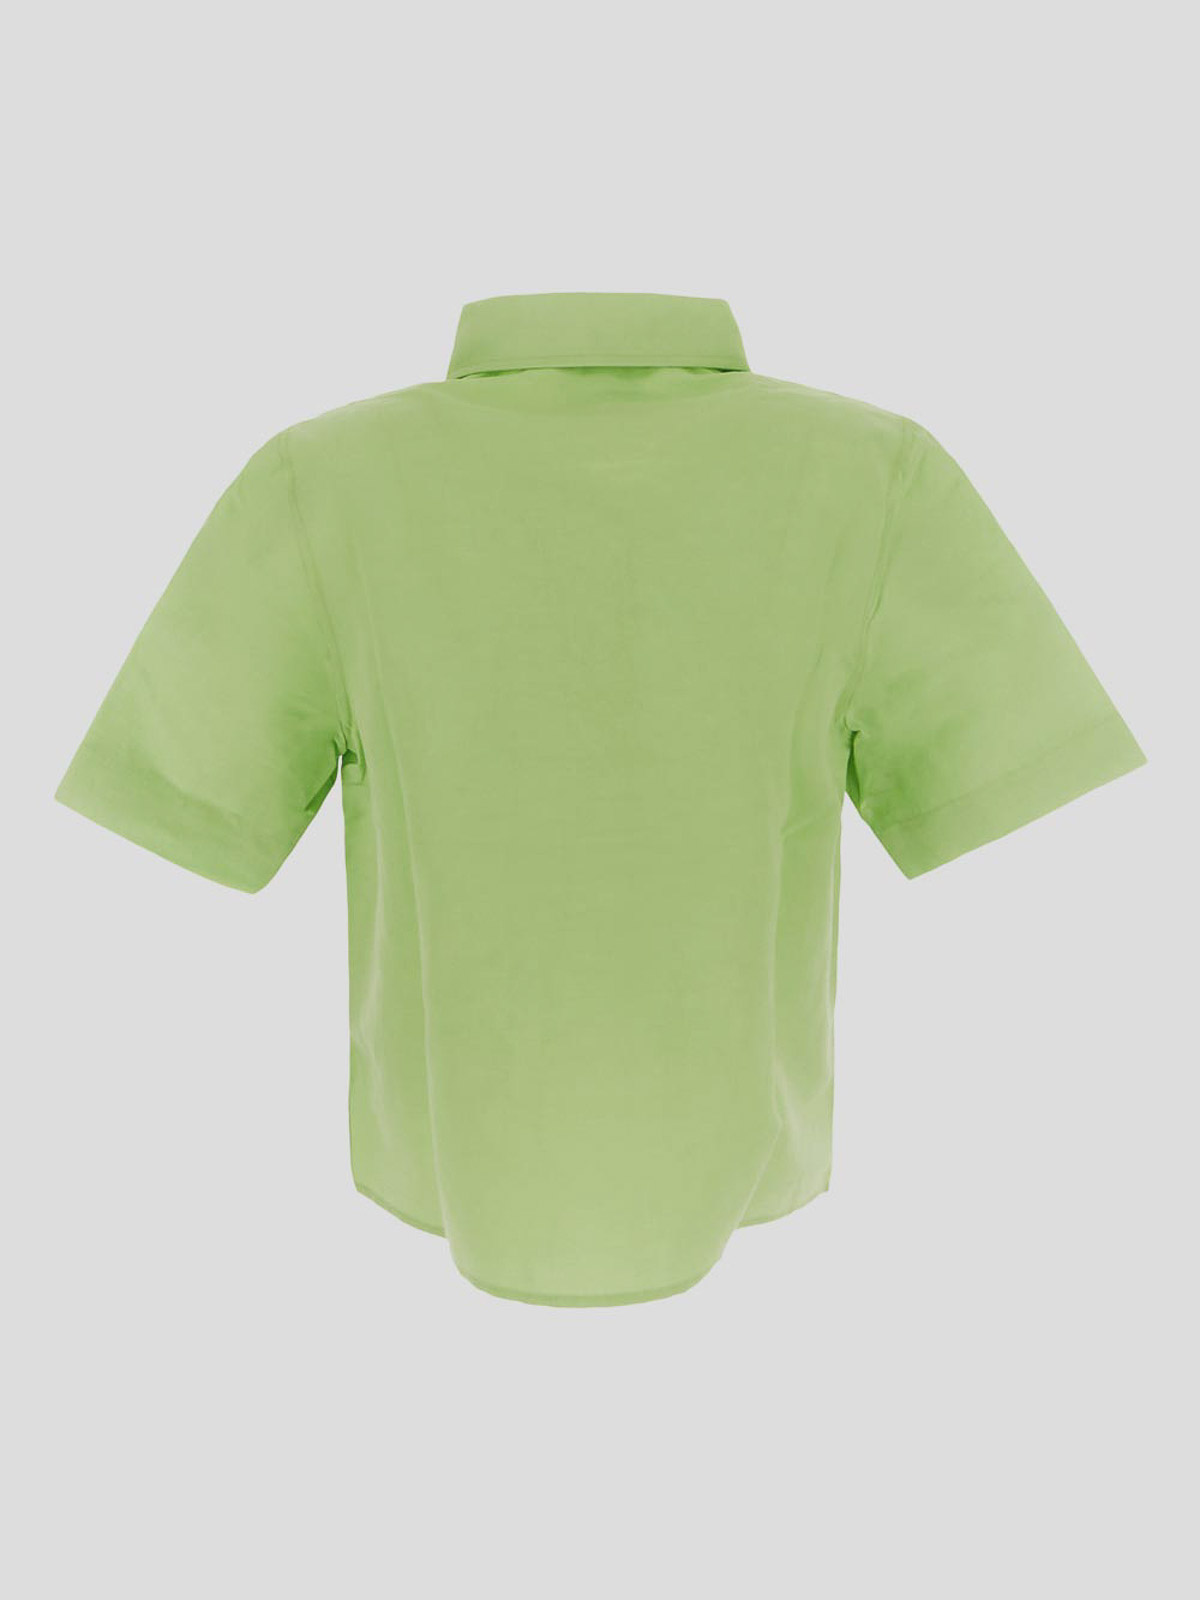 Shop Lido T-shirt In Green